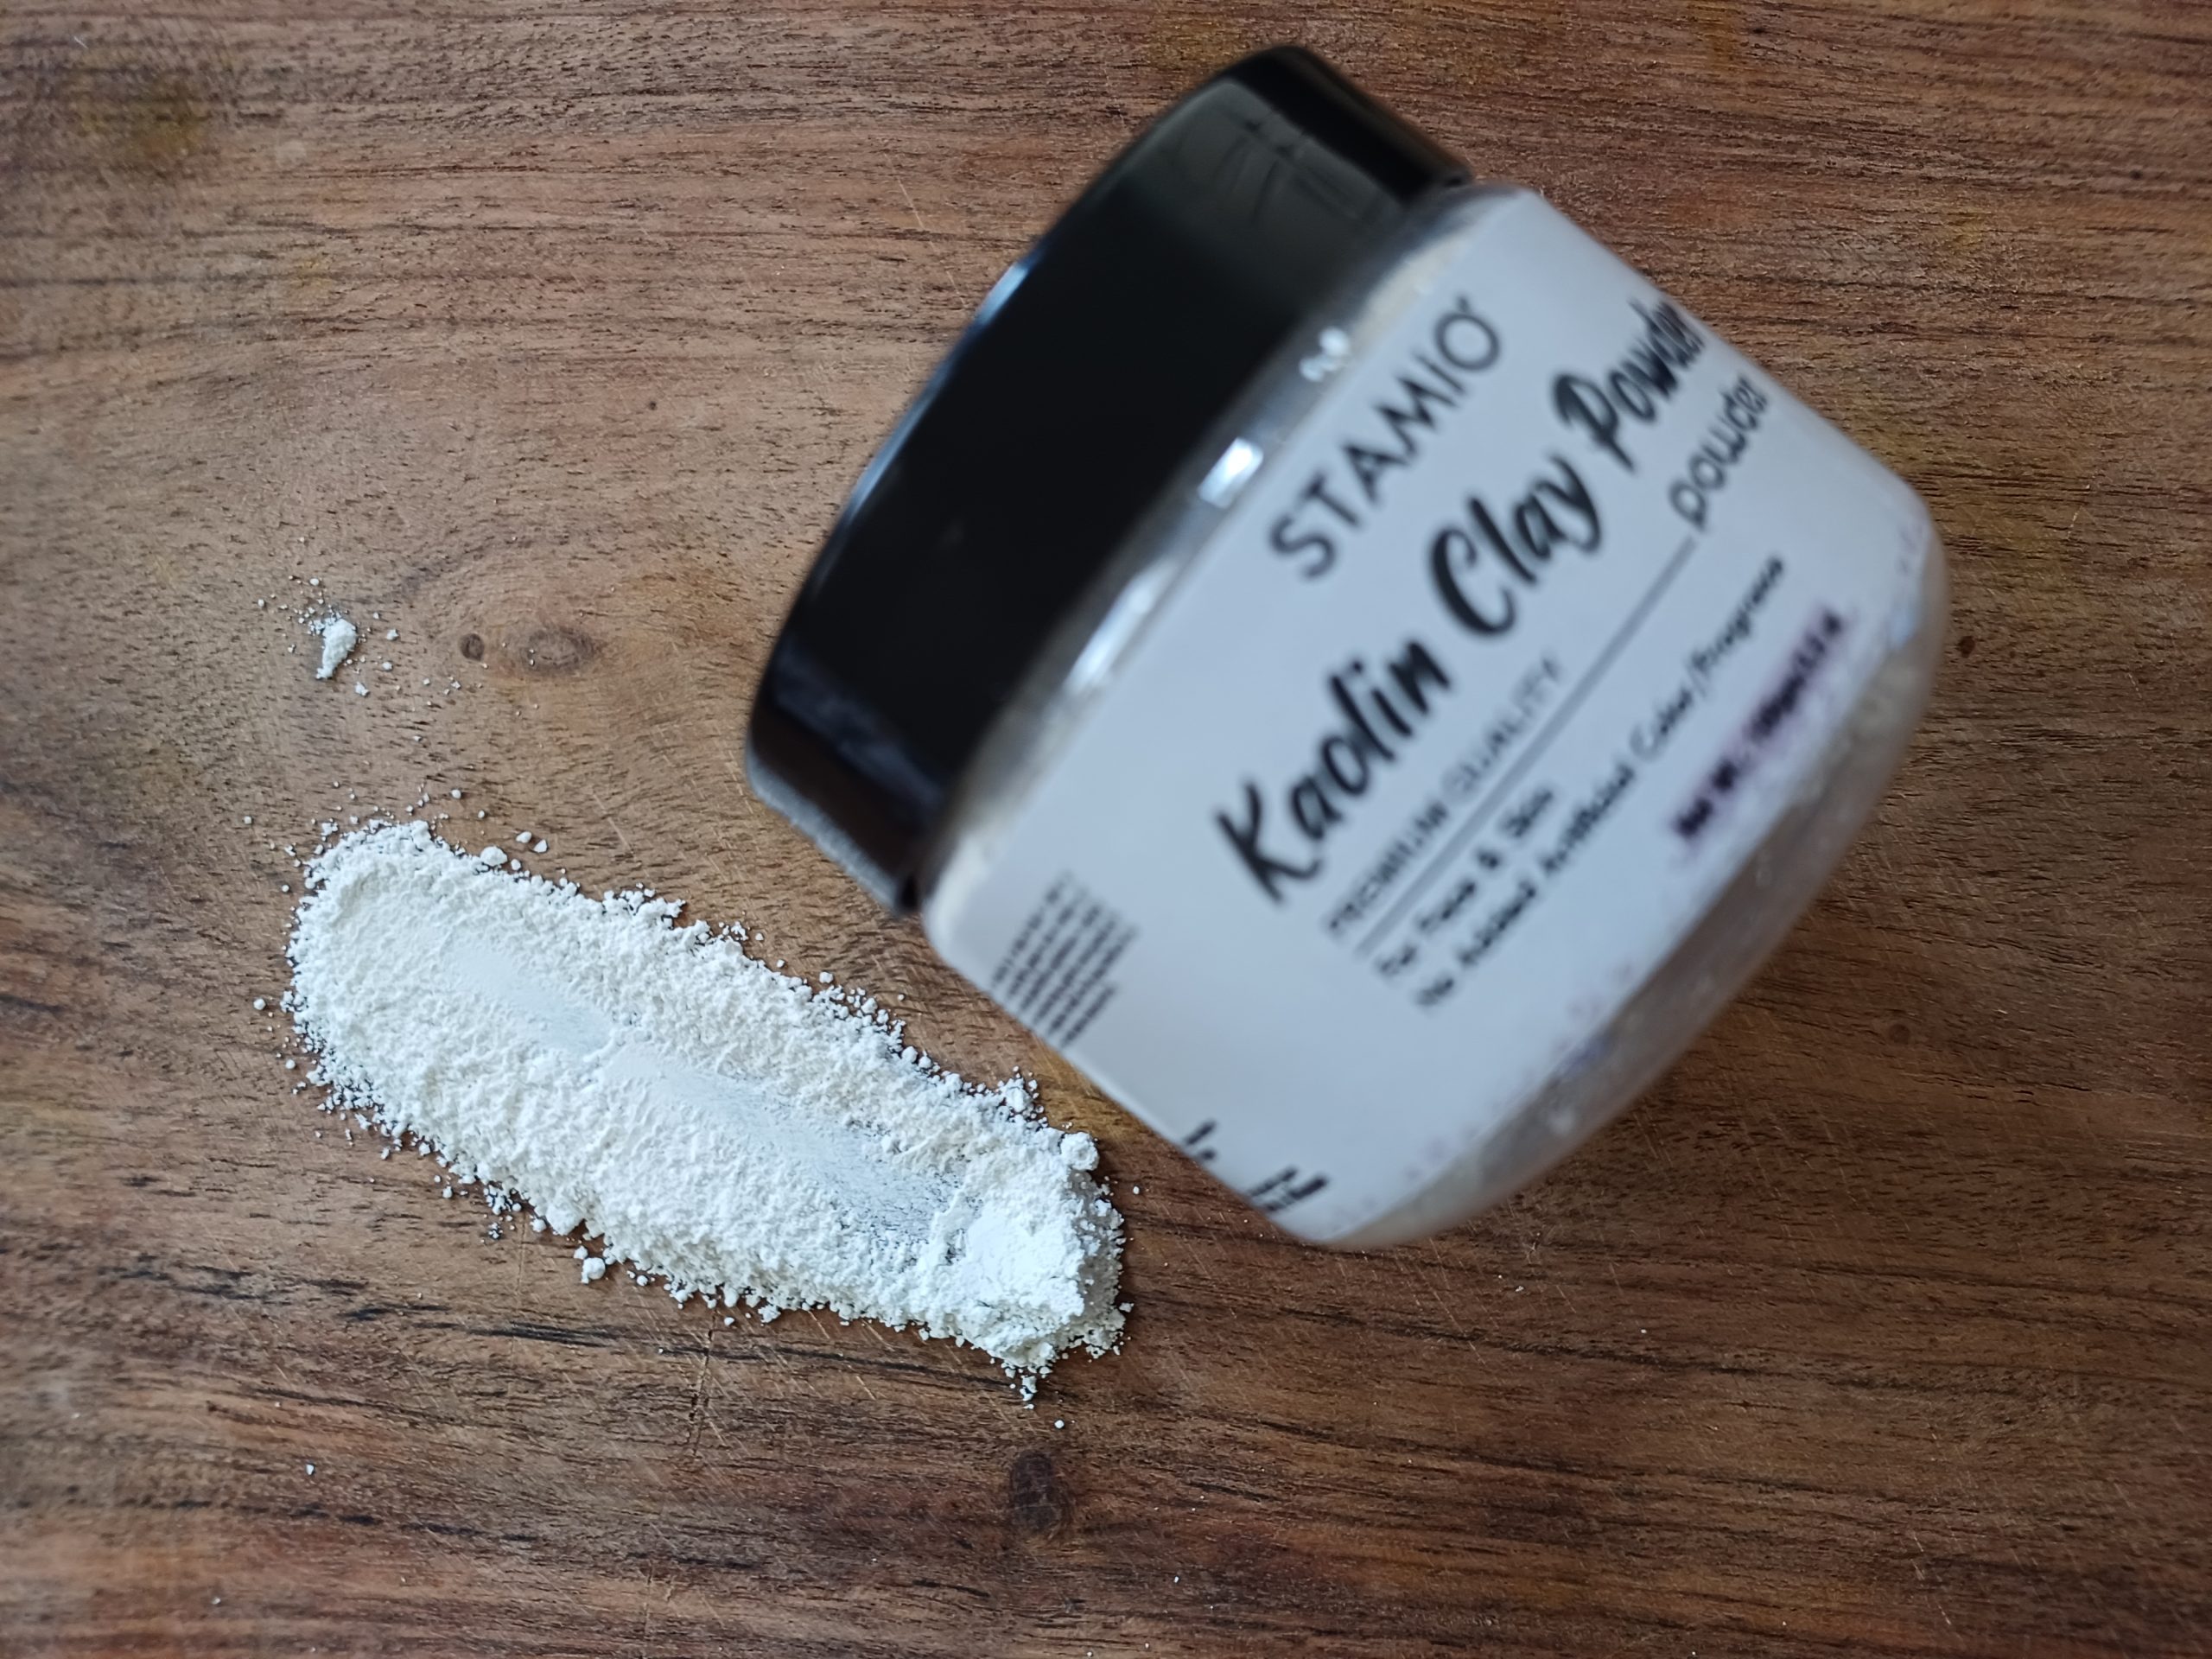 Stamio Kaolin Clay Powder Review